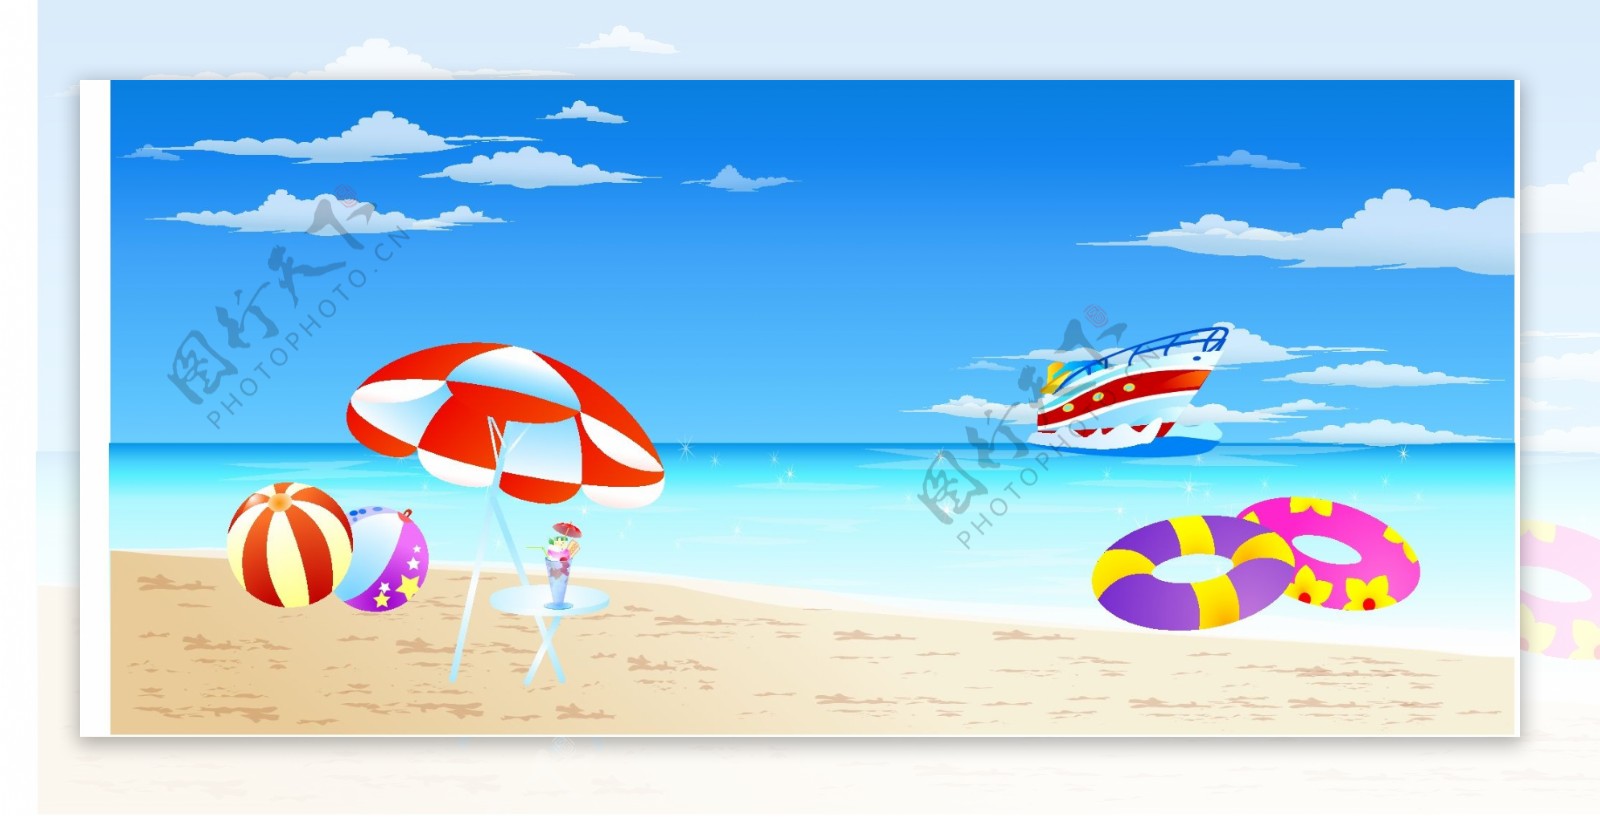 风景矢量素材梦幻线条海边沙滩天空太阳伞救生圈风景风光矢量素材AI格式